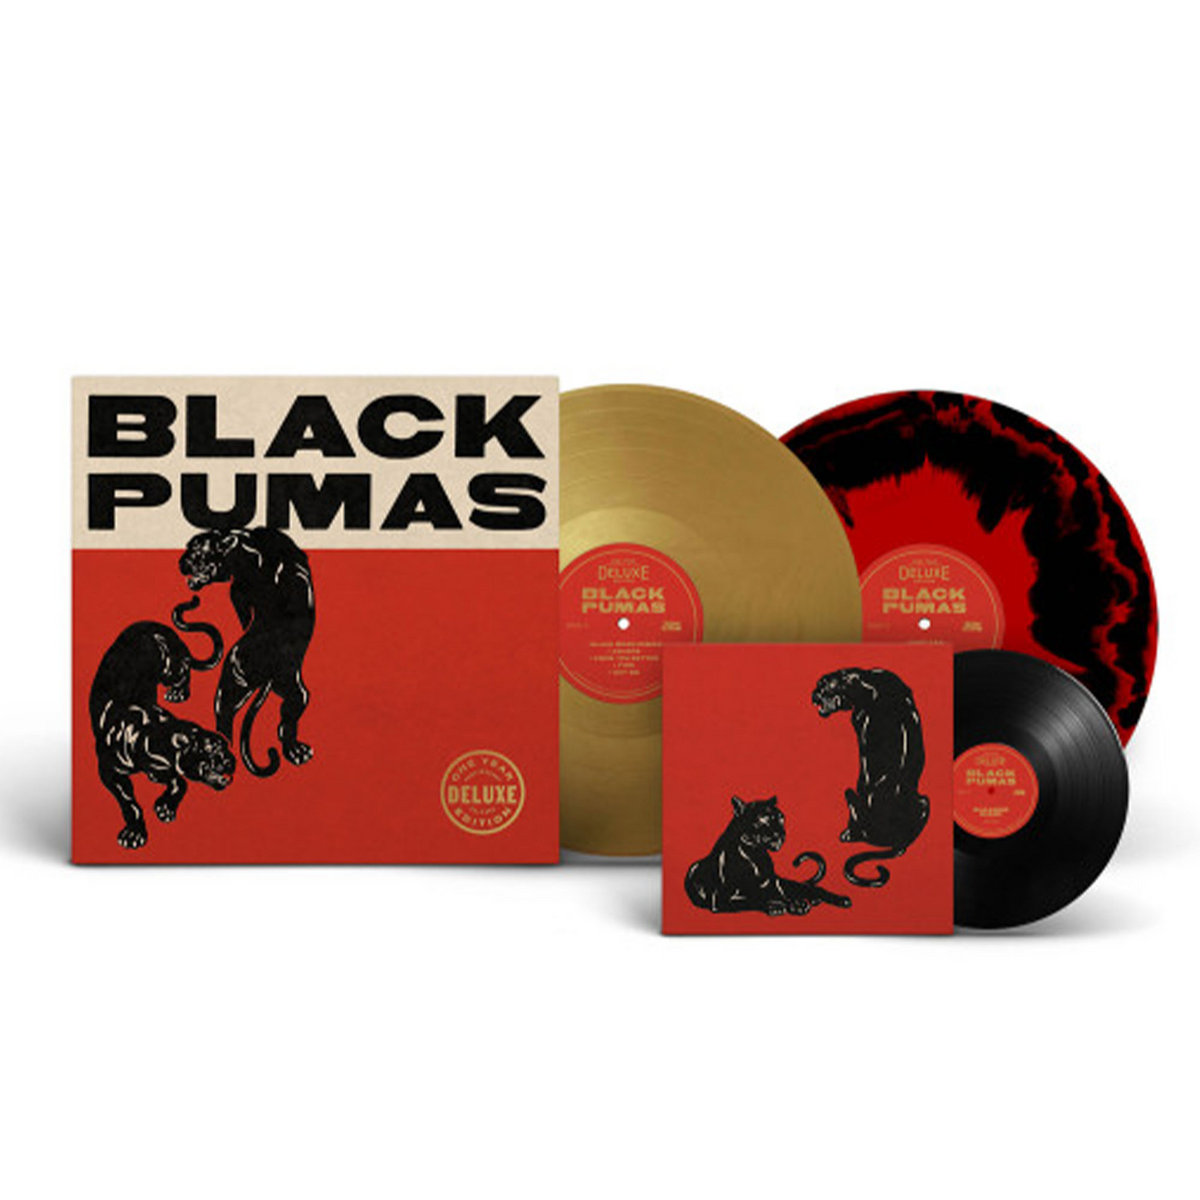 Black Pumas - Black Pumas (Super Deluxe Edition)